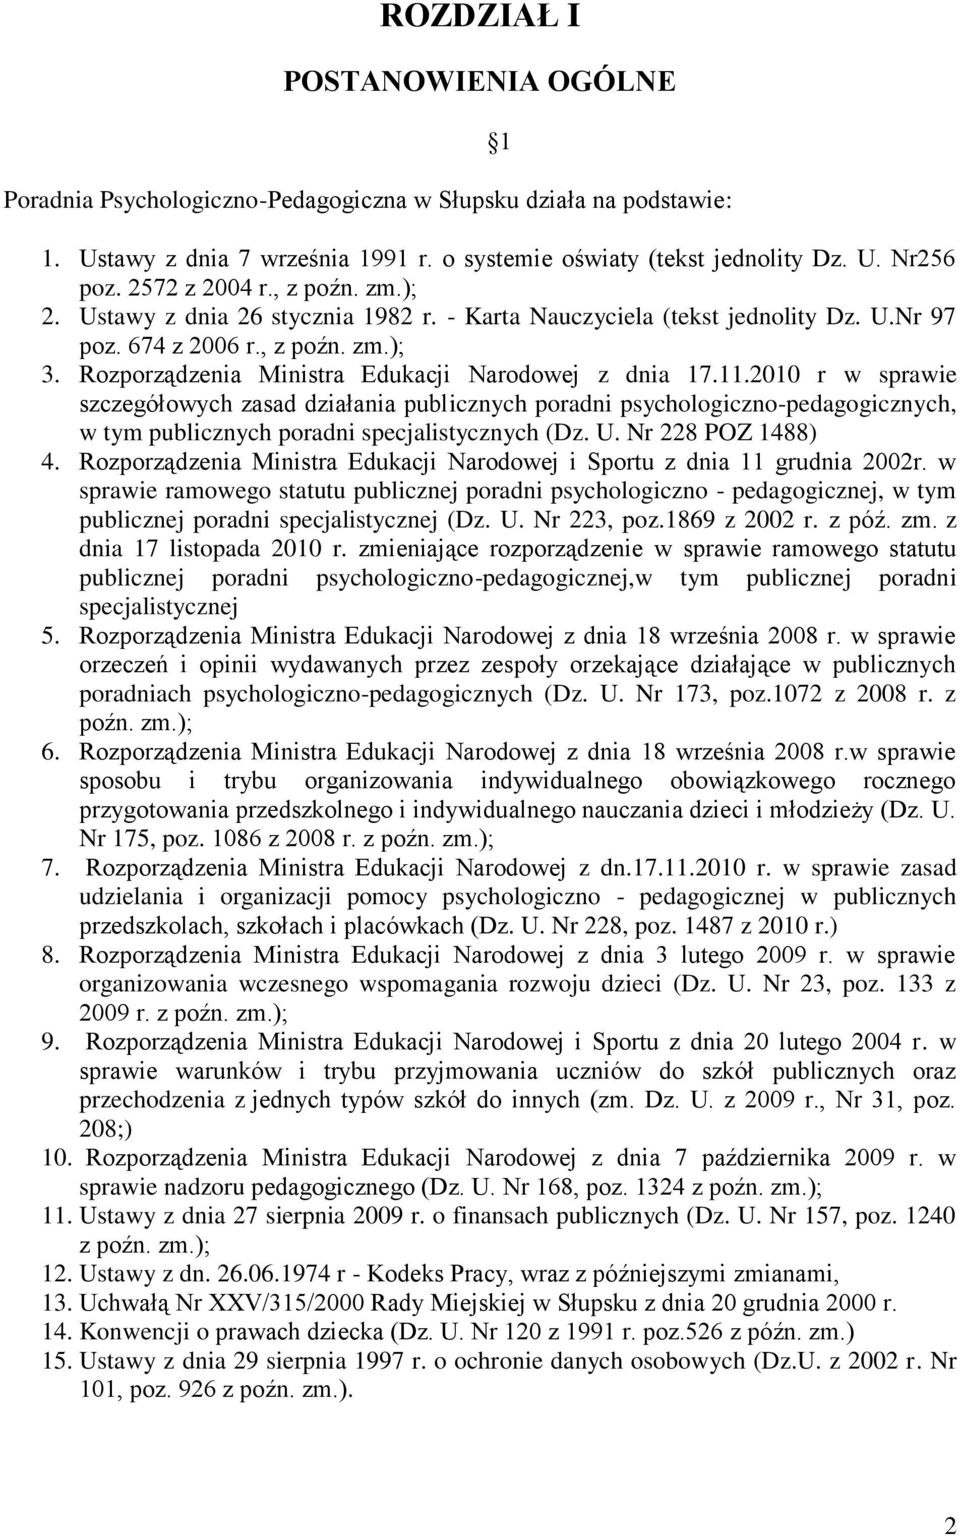 Rozporządzenia Ministra Edukacji Narodowej z dnia 17.11.